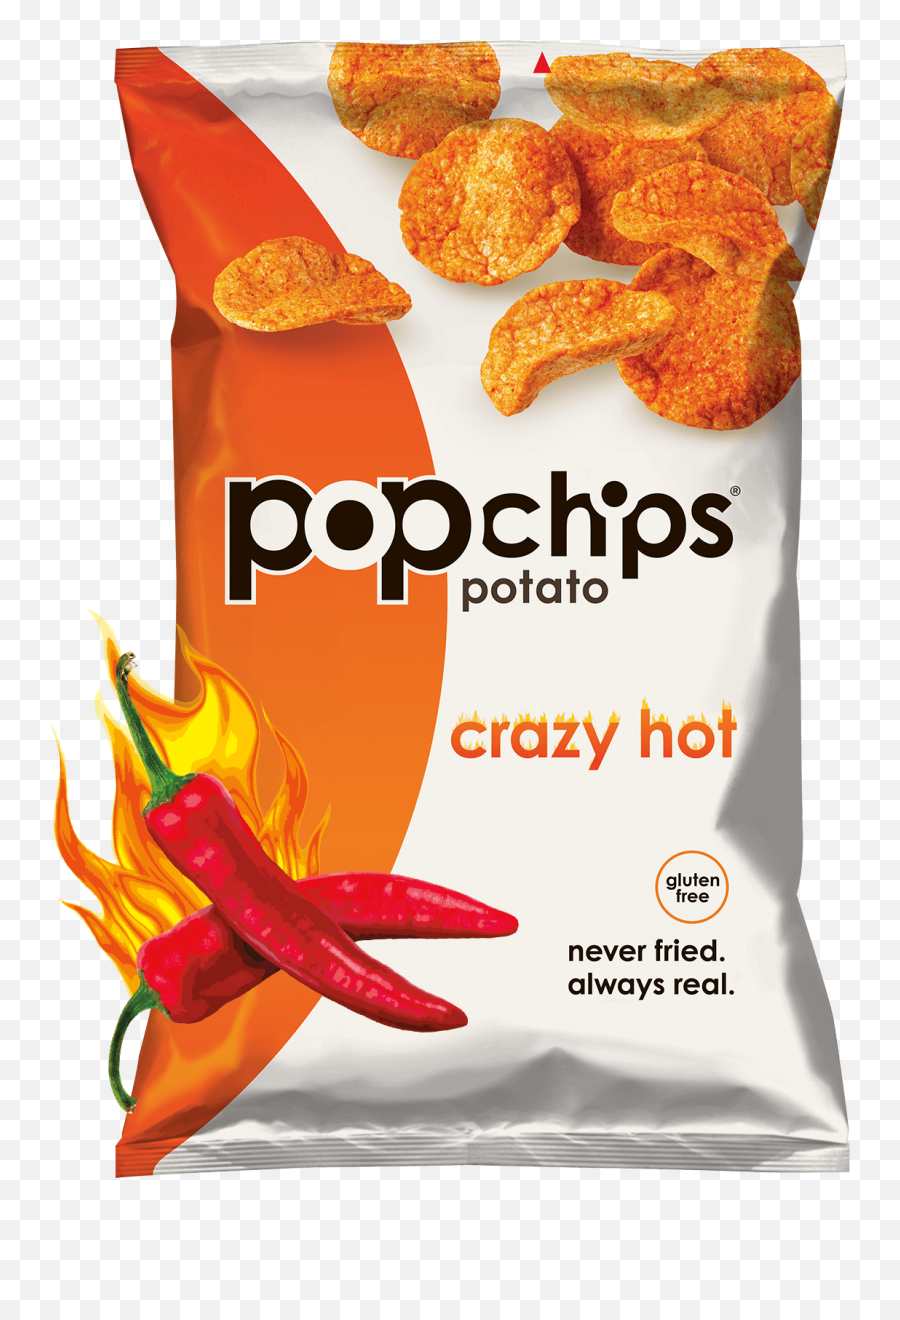 Download 5oz Bag Of Crazy Hot Popchips - Pop Chips Spicy Png Popchips Crazy Hot,Spicy Png